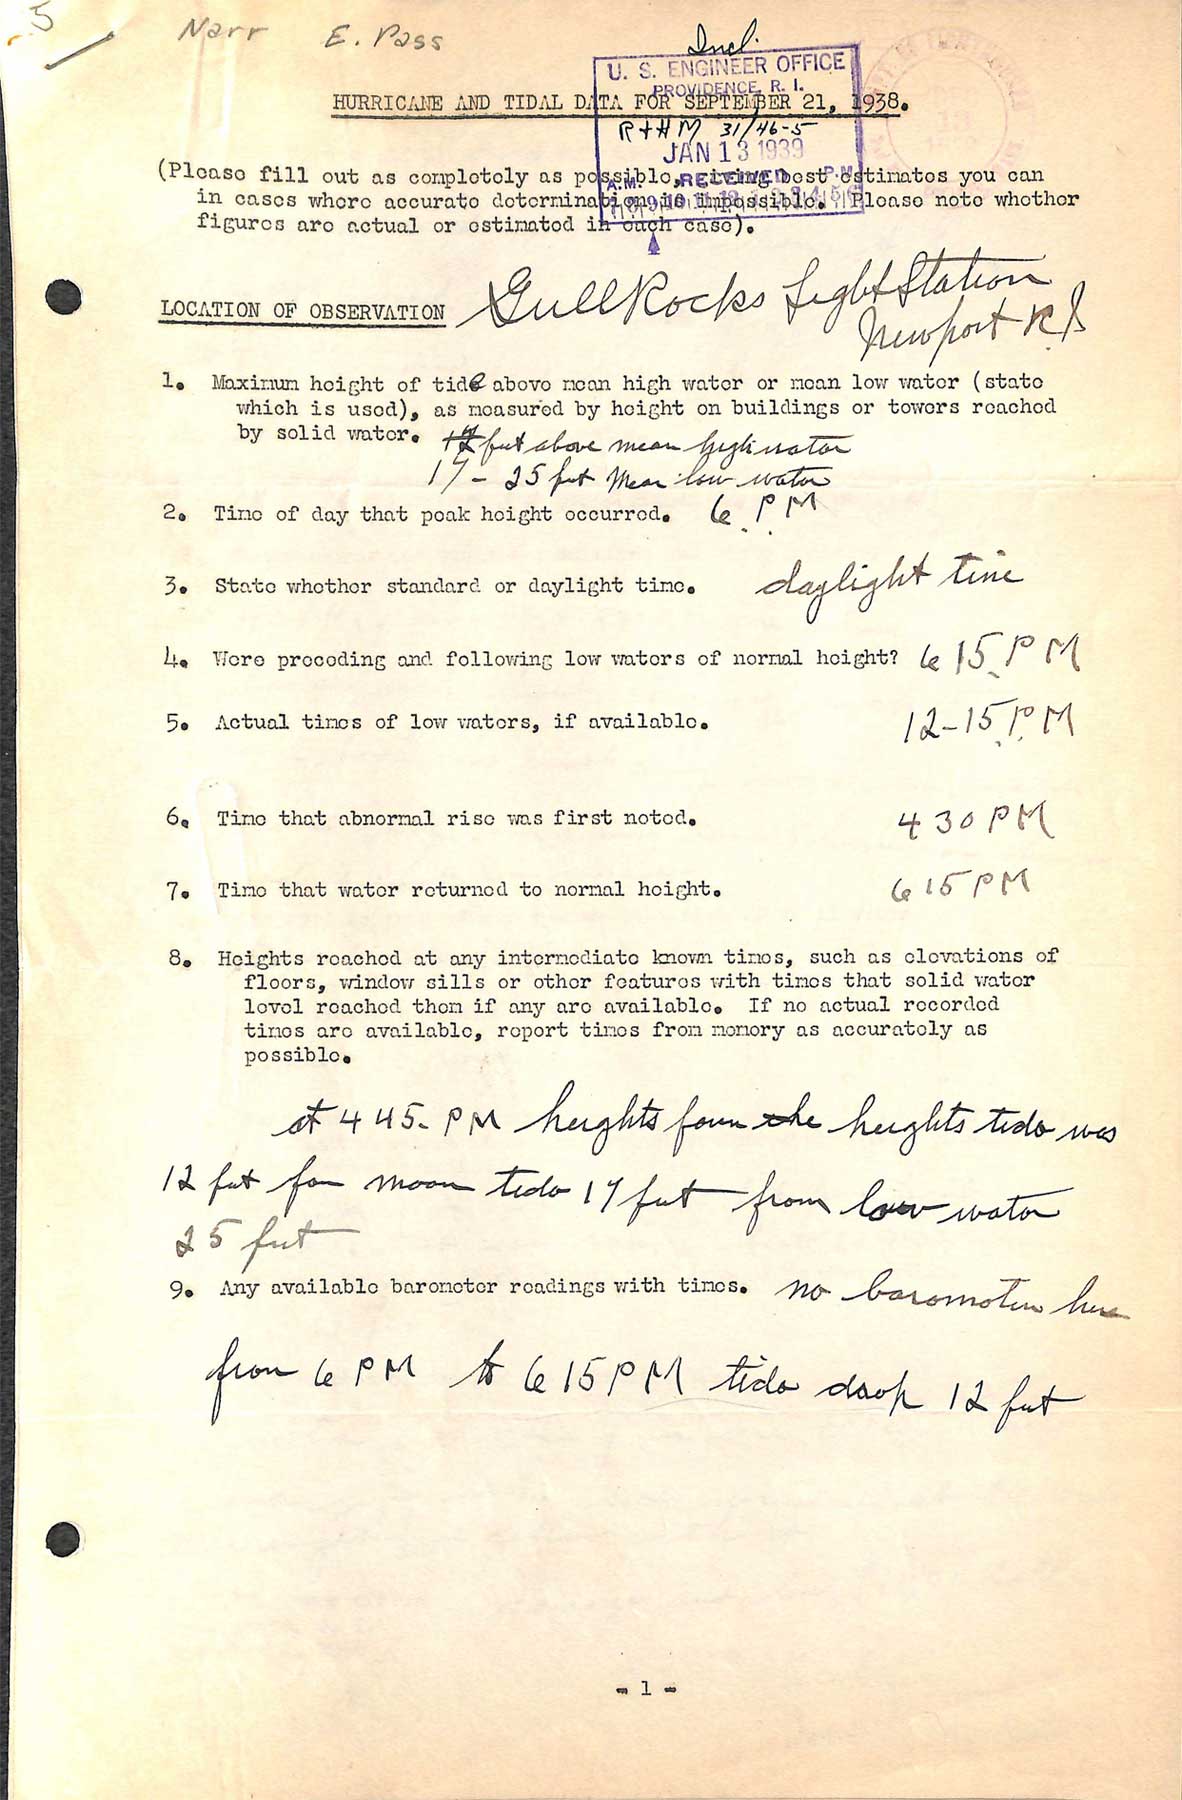 Gull Rock Light - A questionnaire regarding the hurricane of September 21, 1938